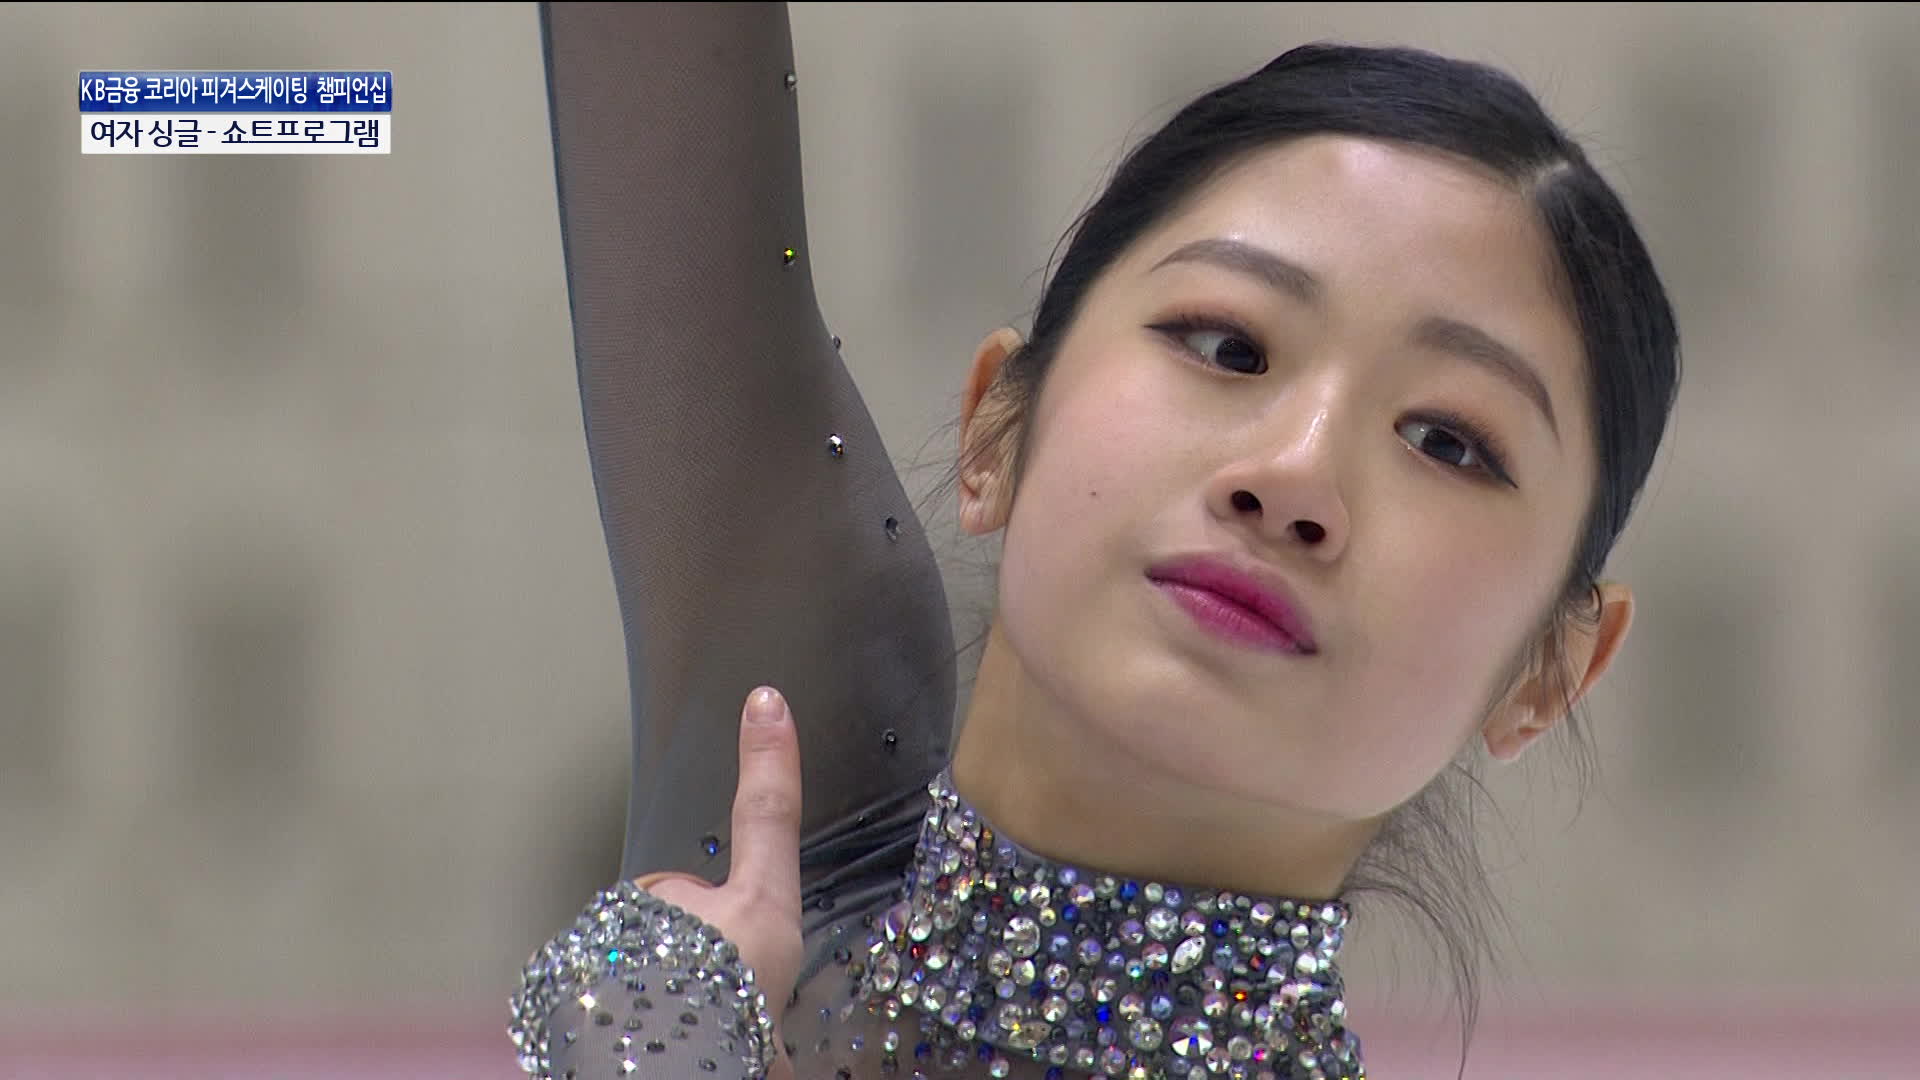 2019-20시즌 한국 피겨스케이팅 선수권에서 쇼트프로그램 야상곡을 연기하는 14살 이해인